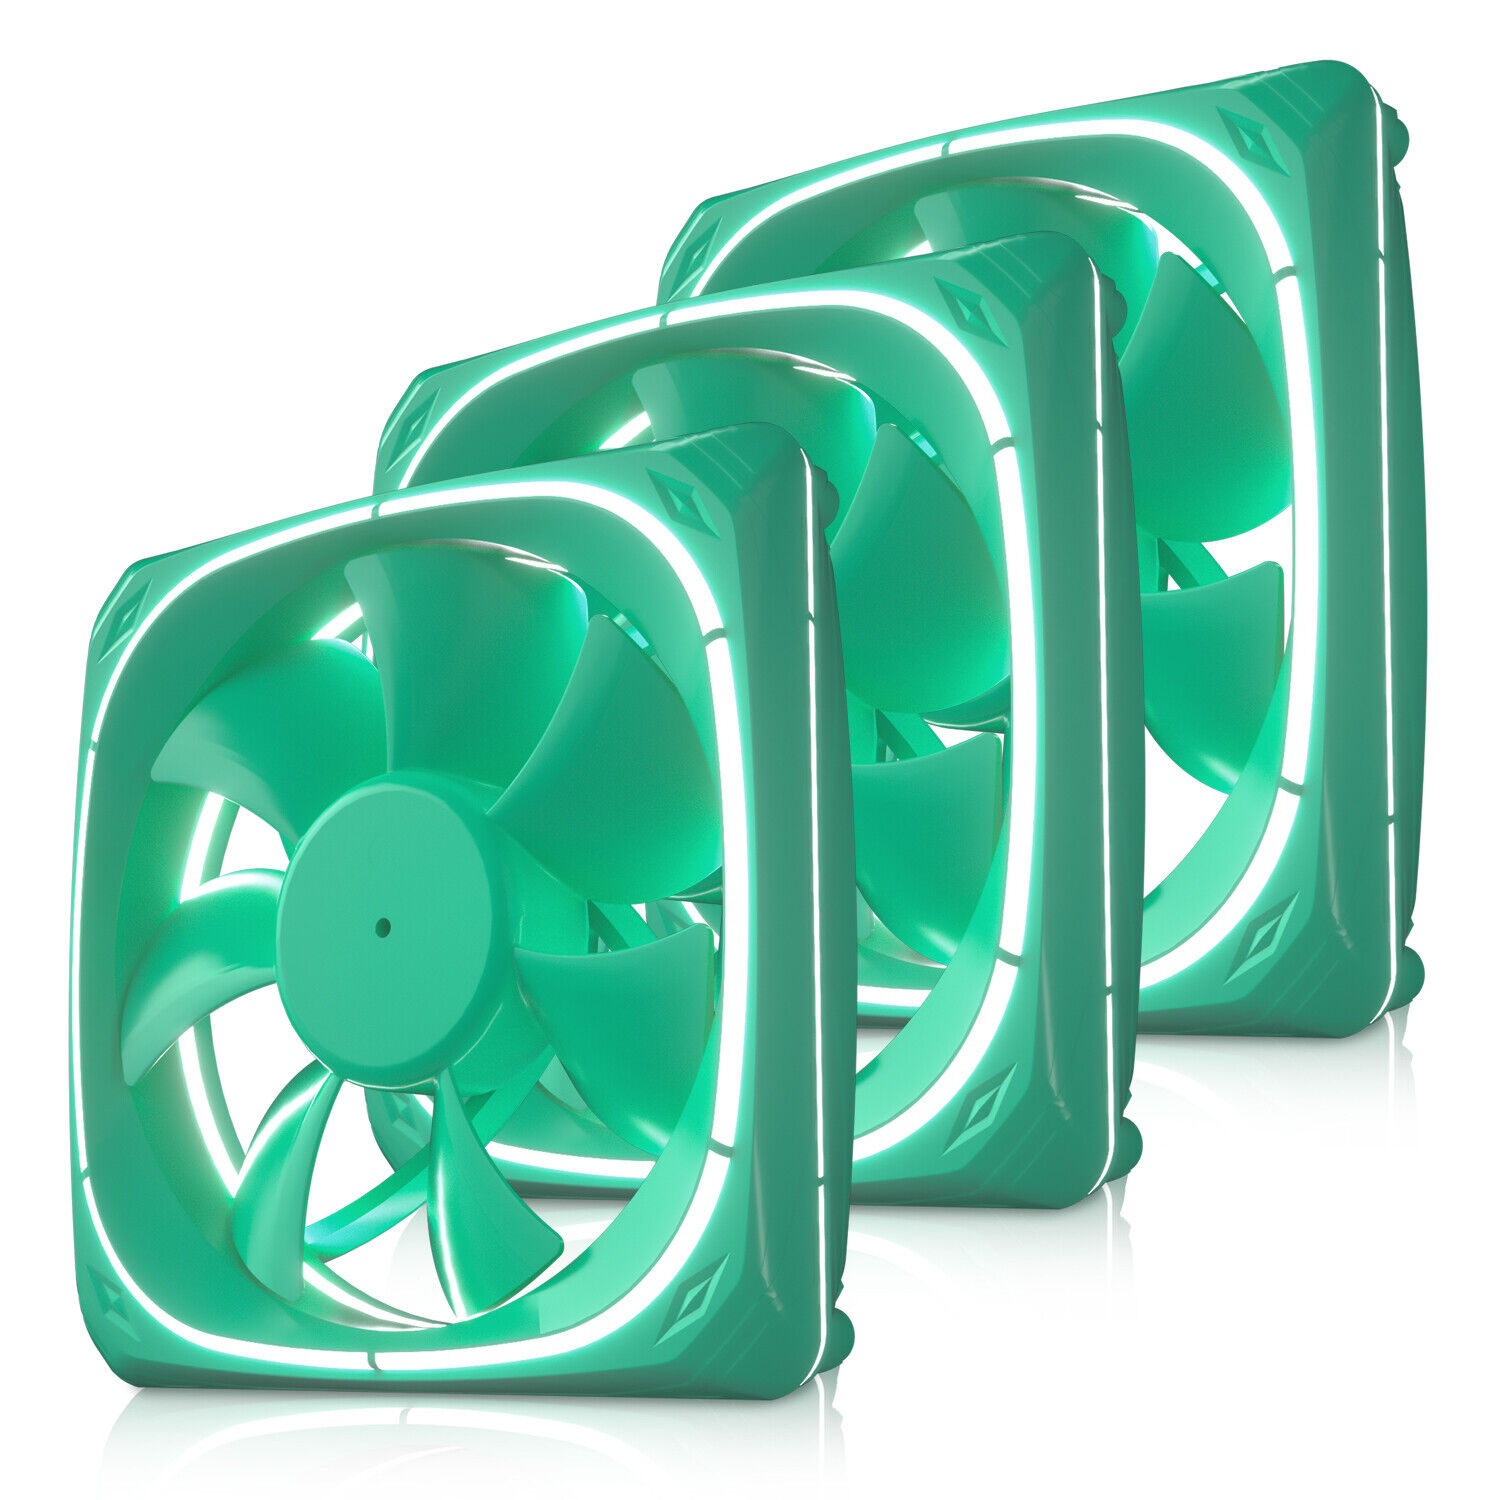 3 Pcs Vetroo DF120 120mm Case Fan White LED Lighting PC Cooling Fan Green Frame